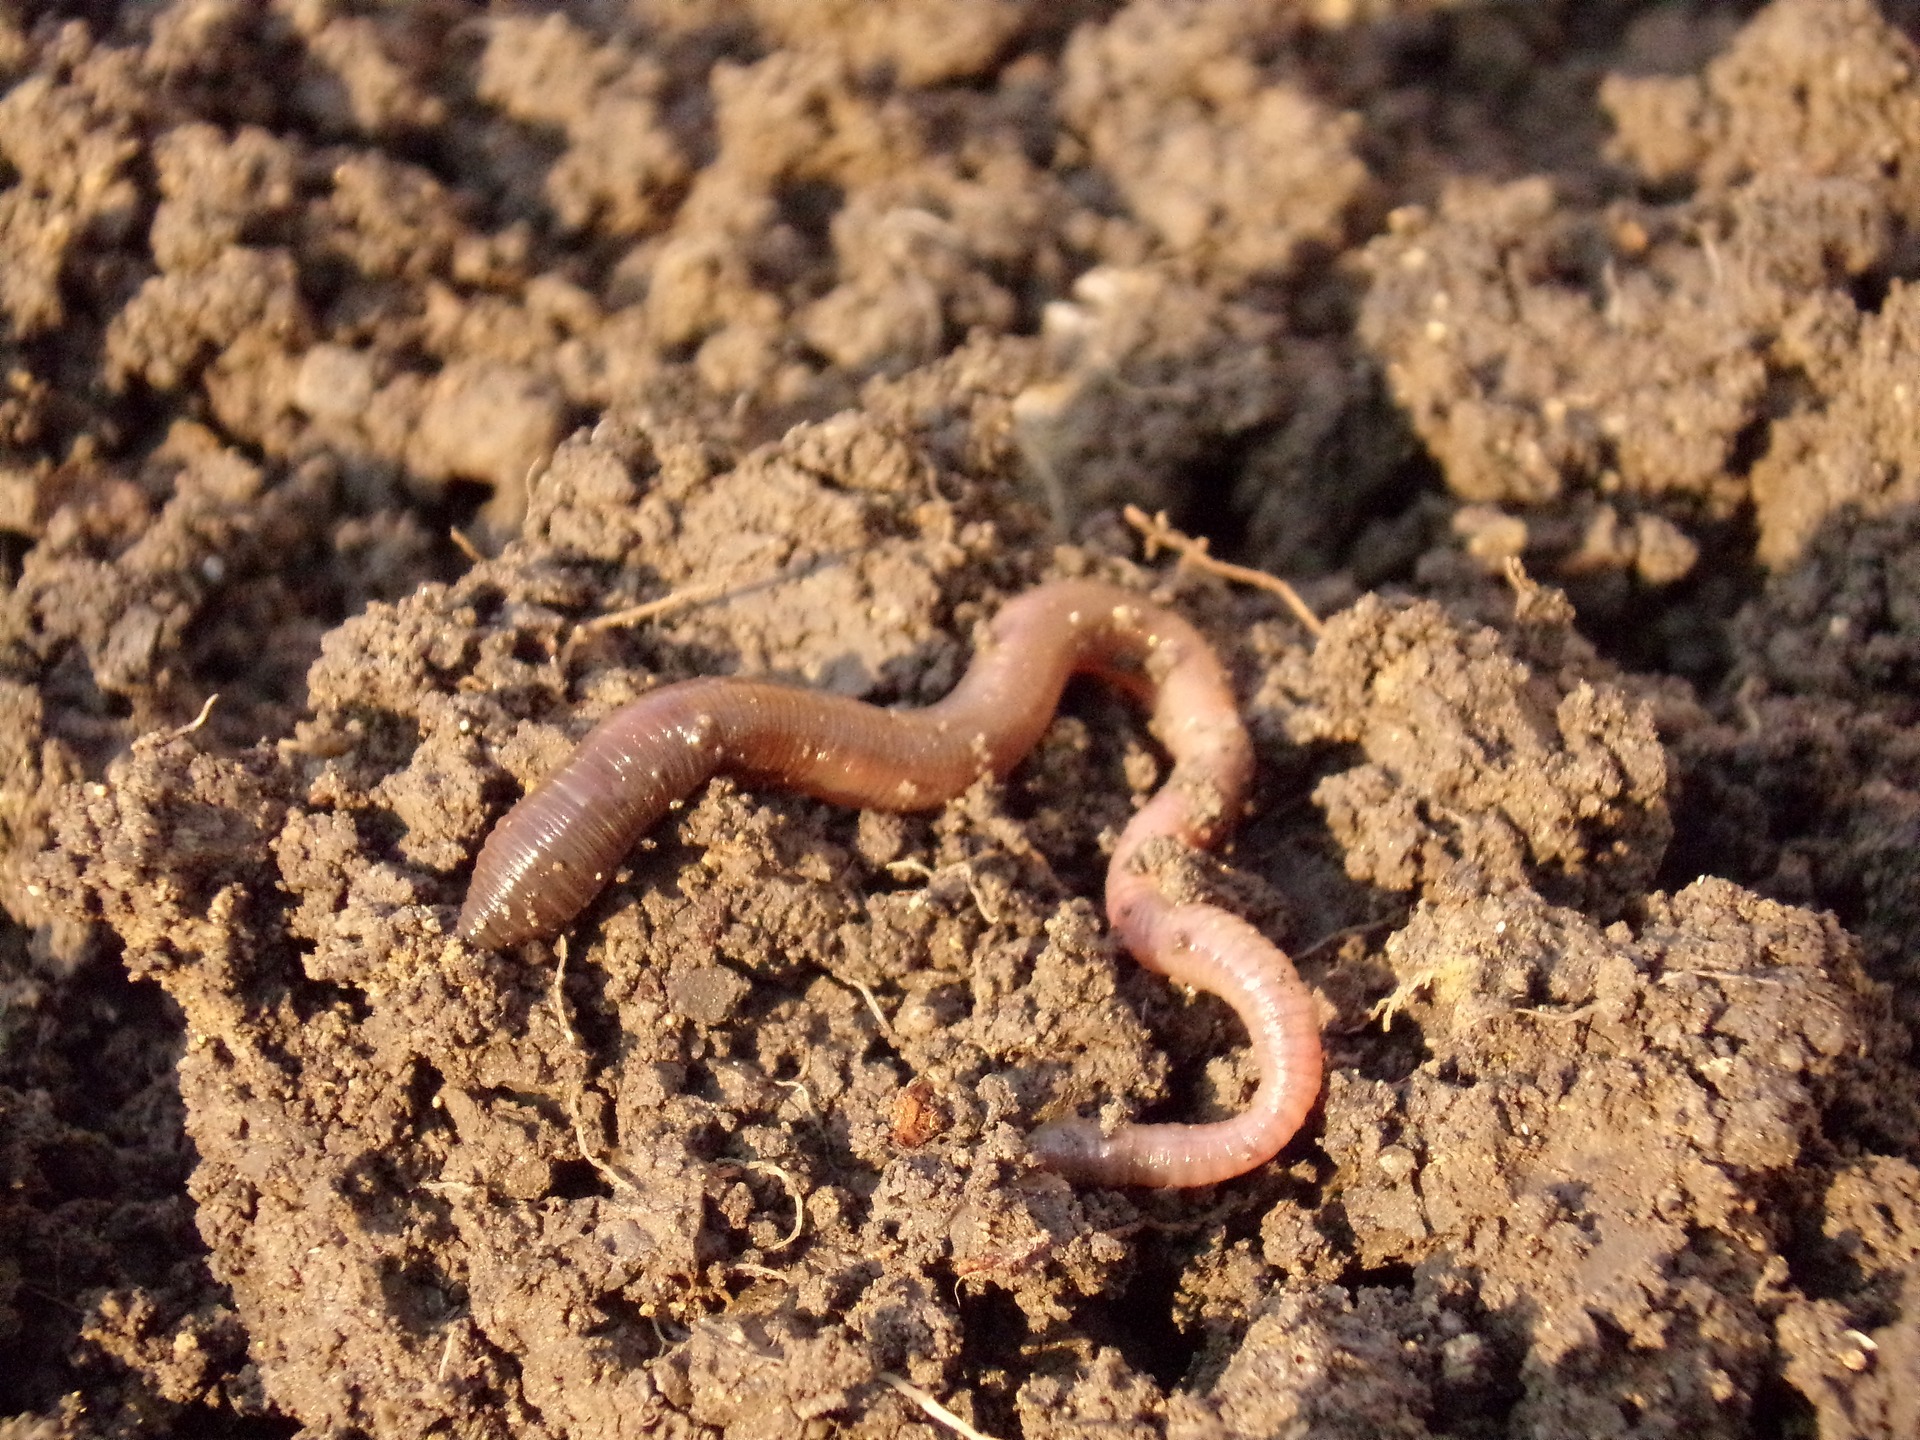 An earthworm on a dirt clod